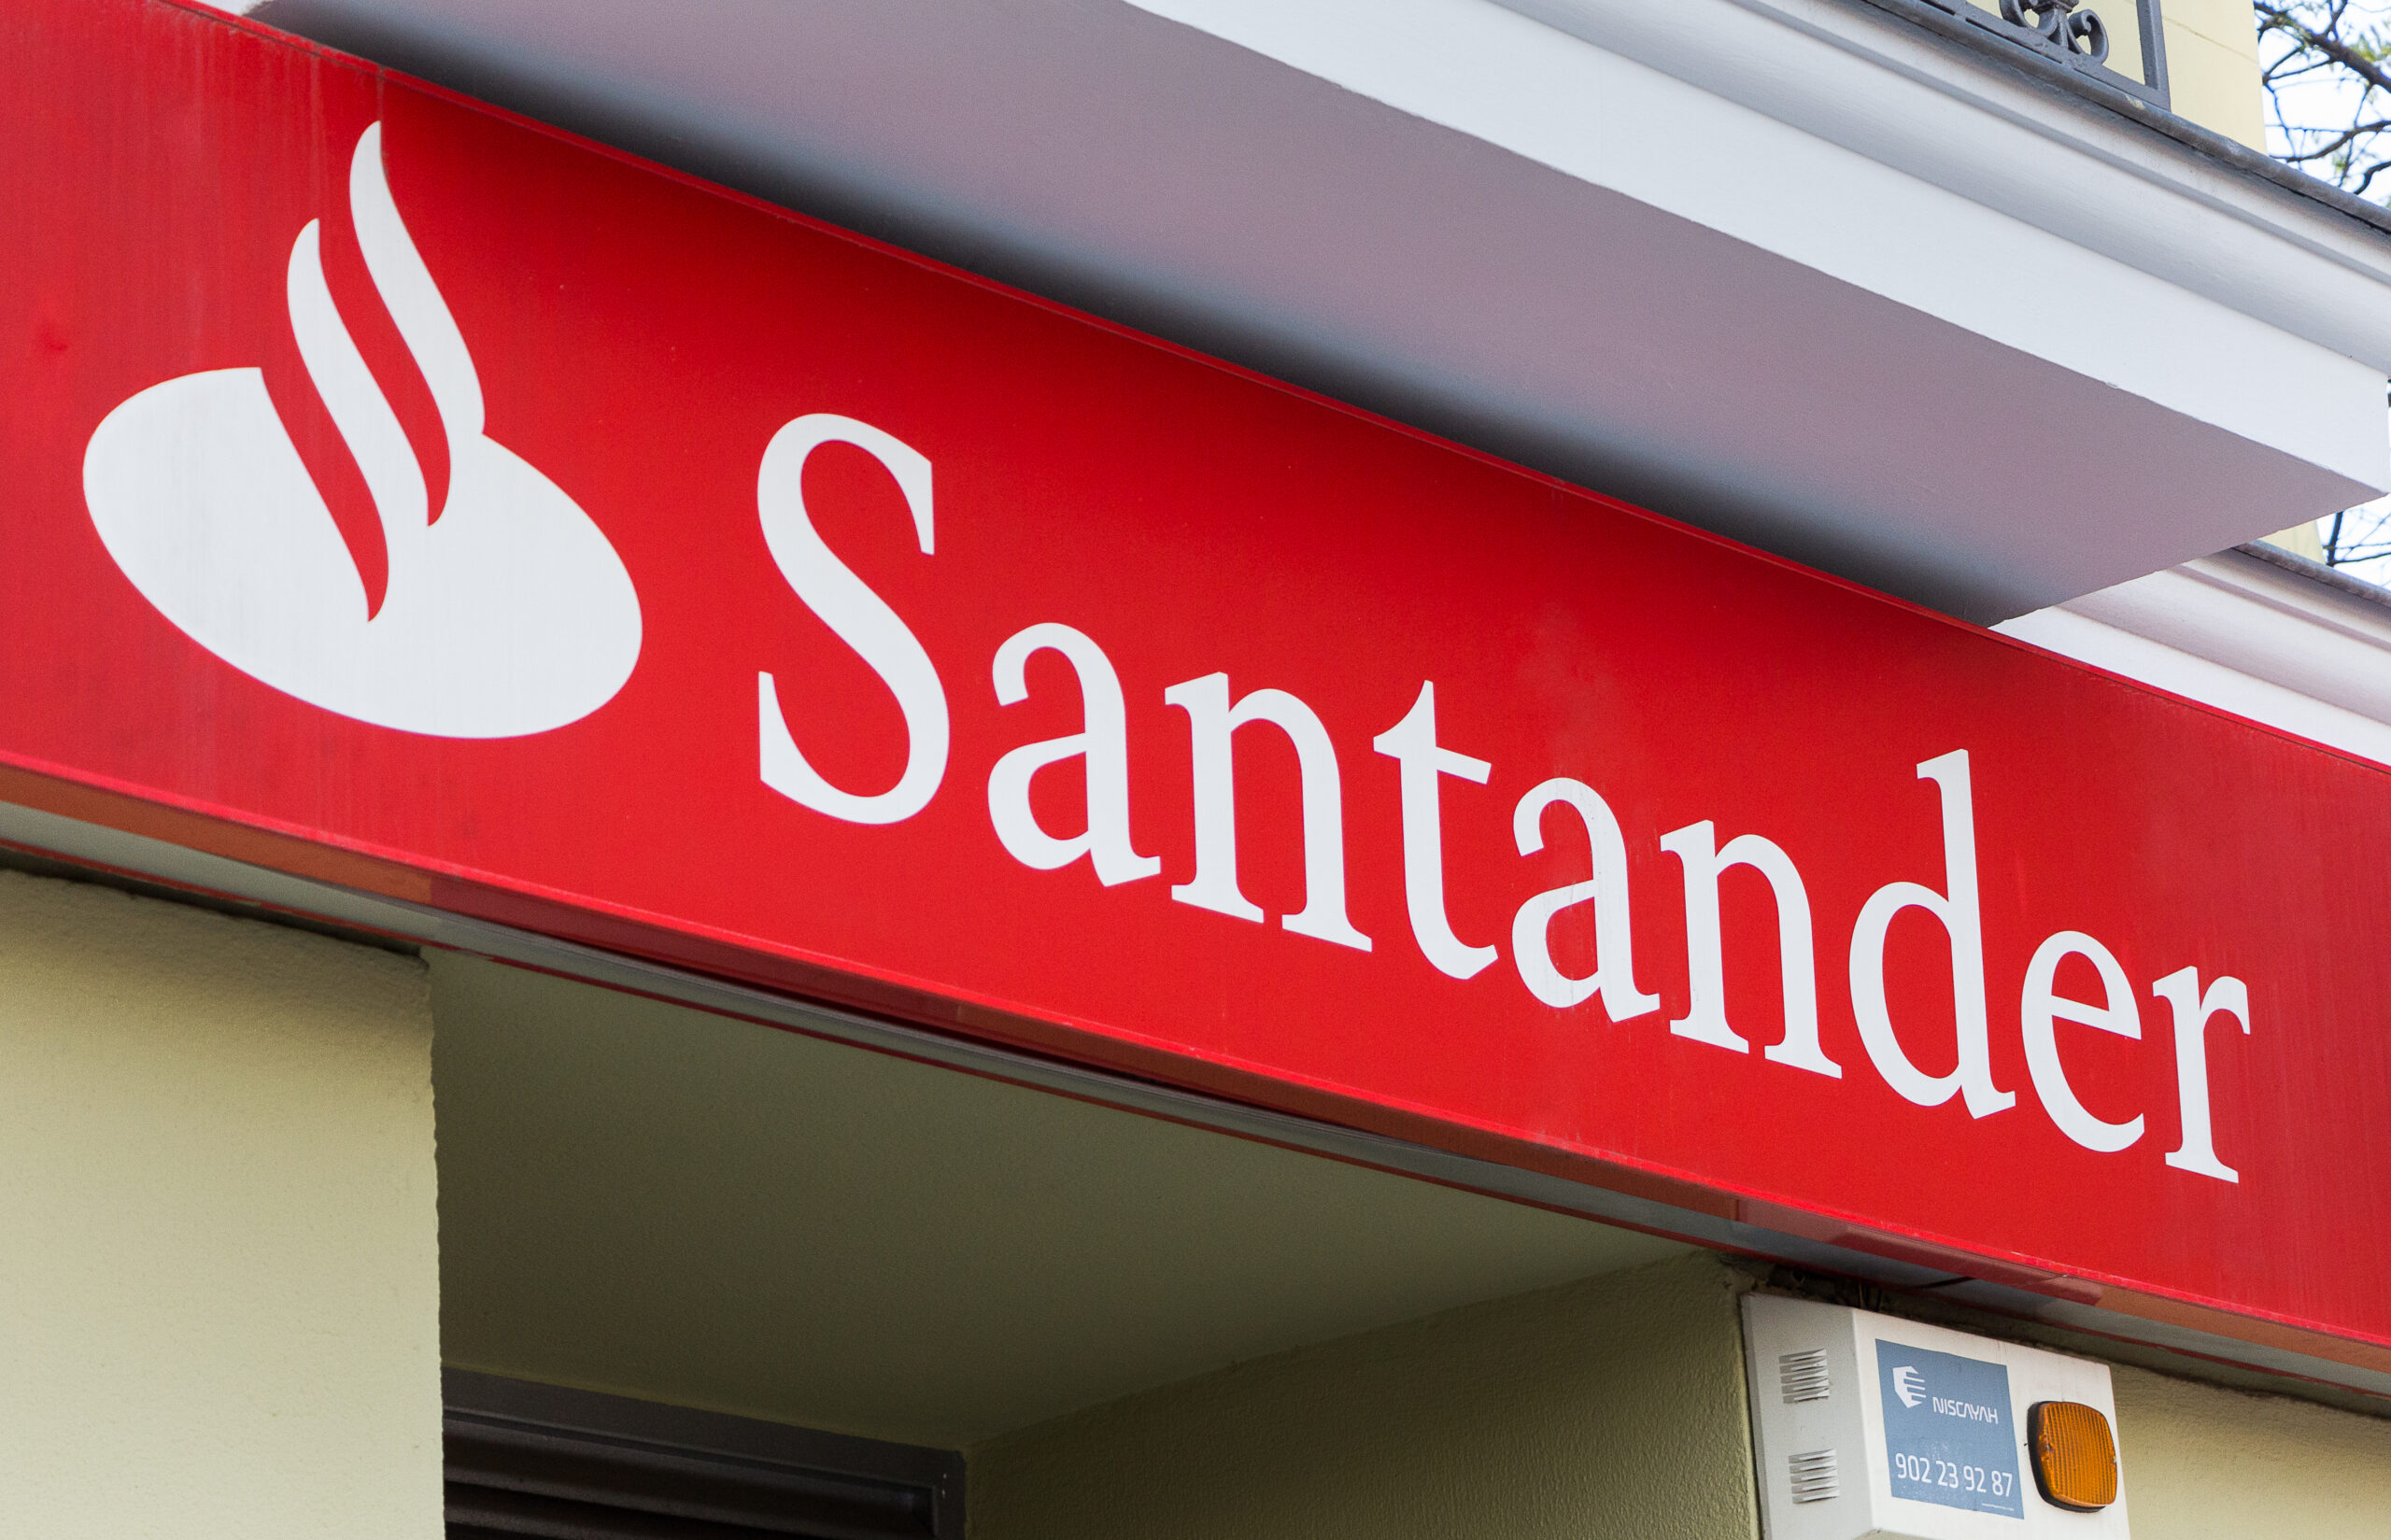 Leilão do Santander: imóveis estão 62% abaixo do valor de mercado